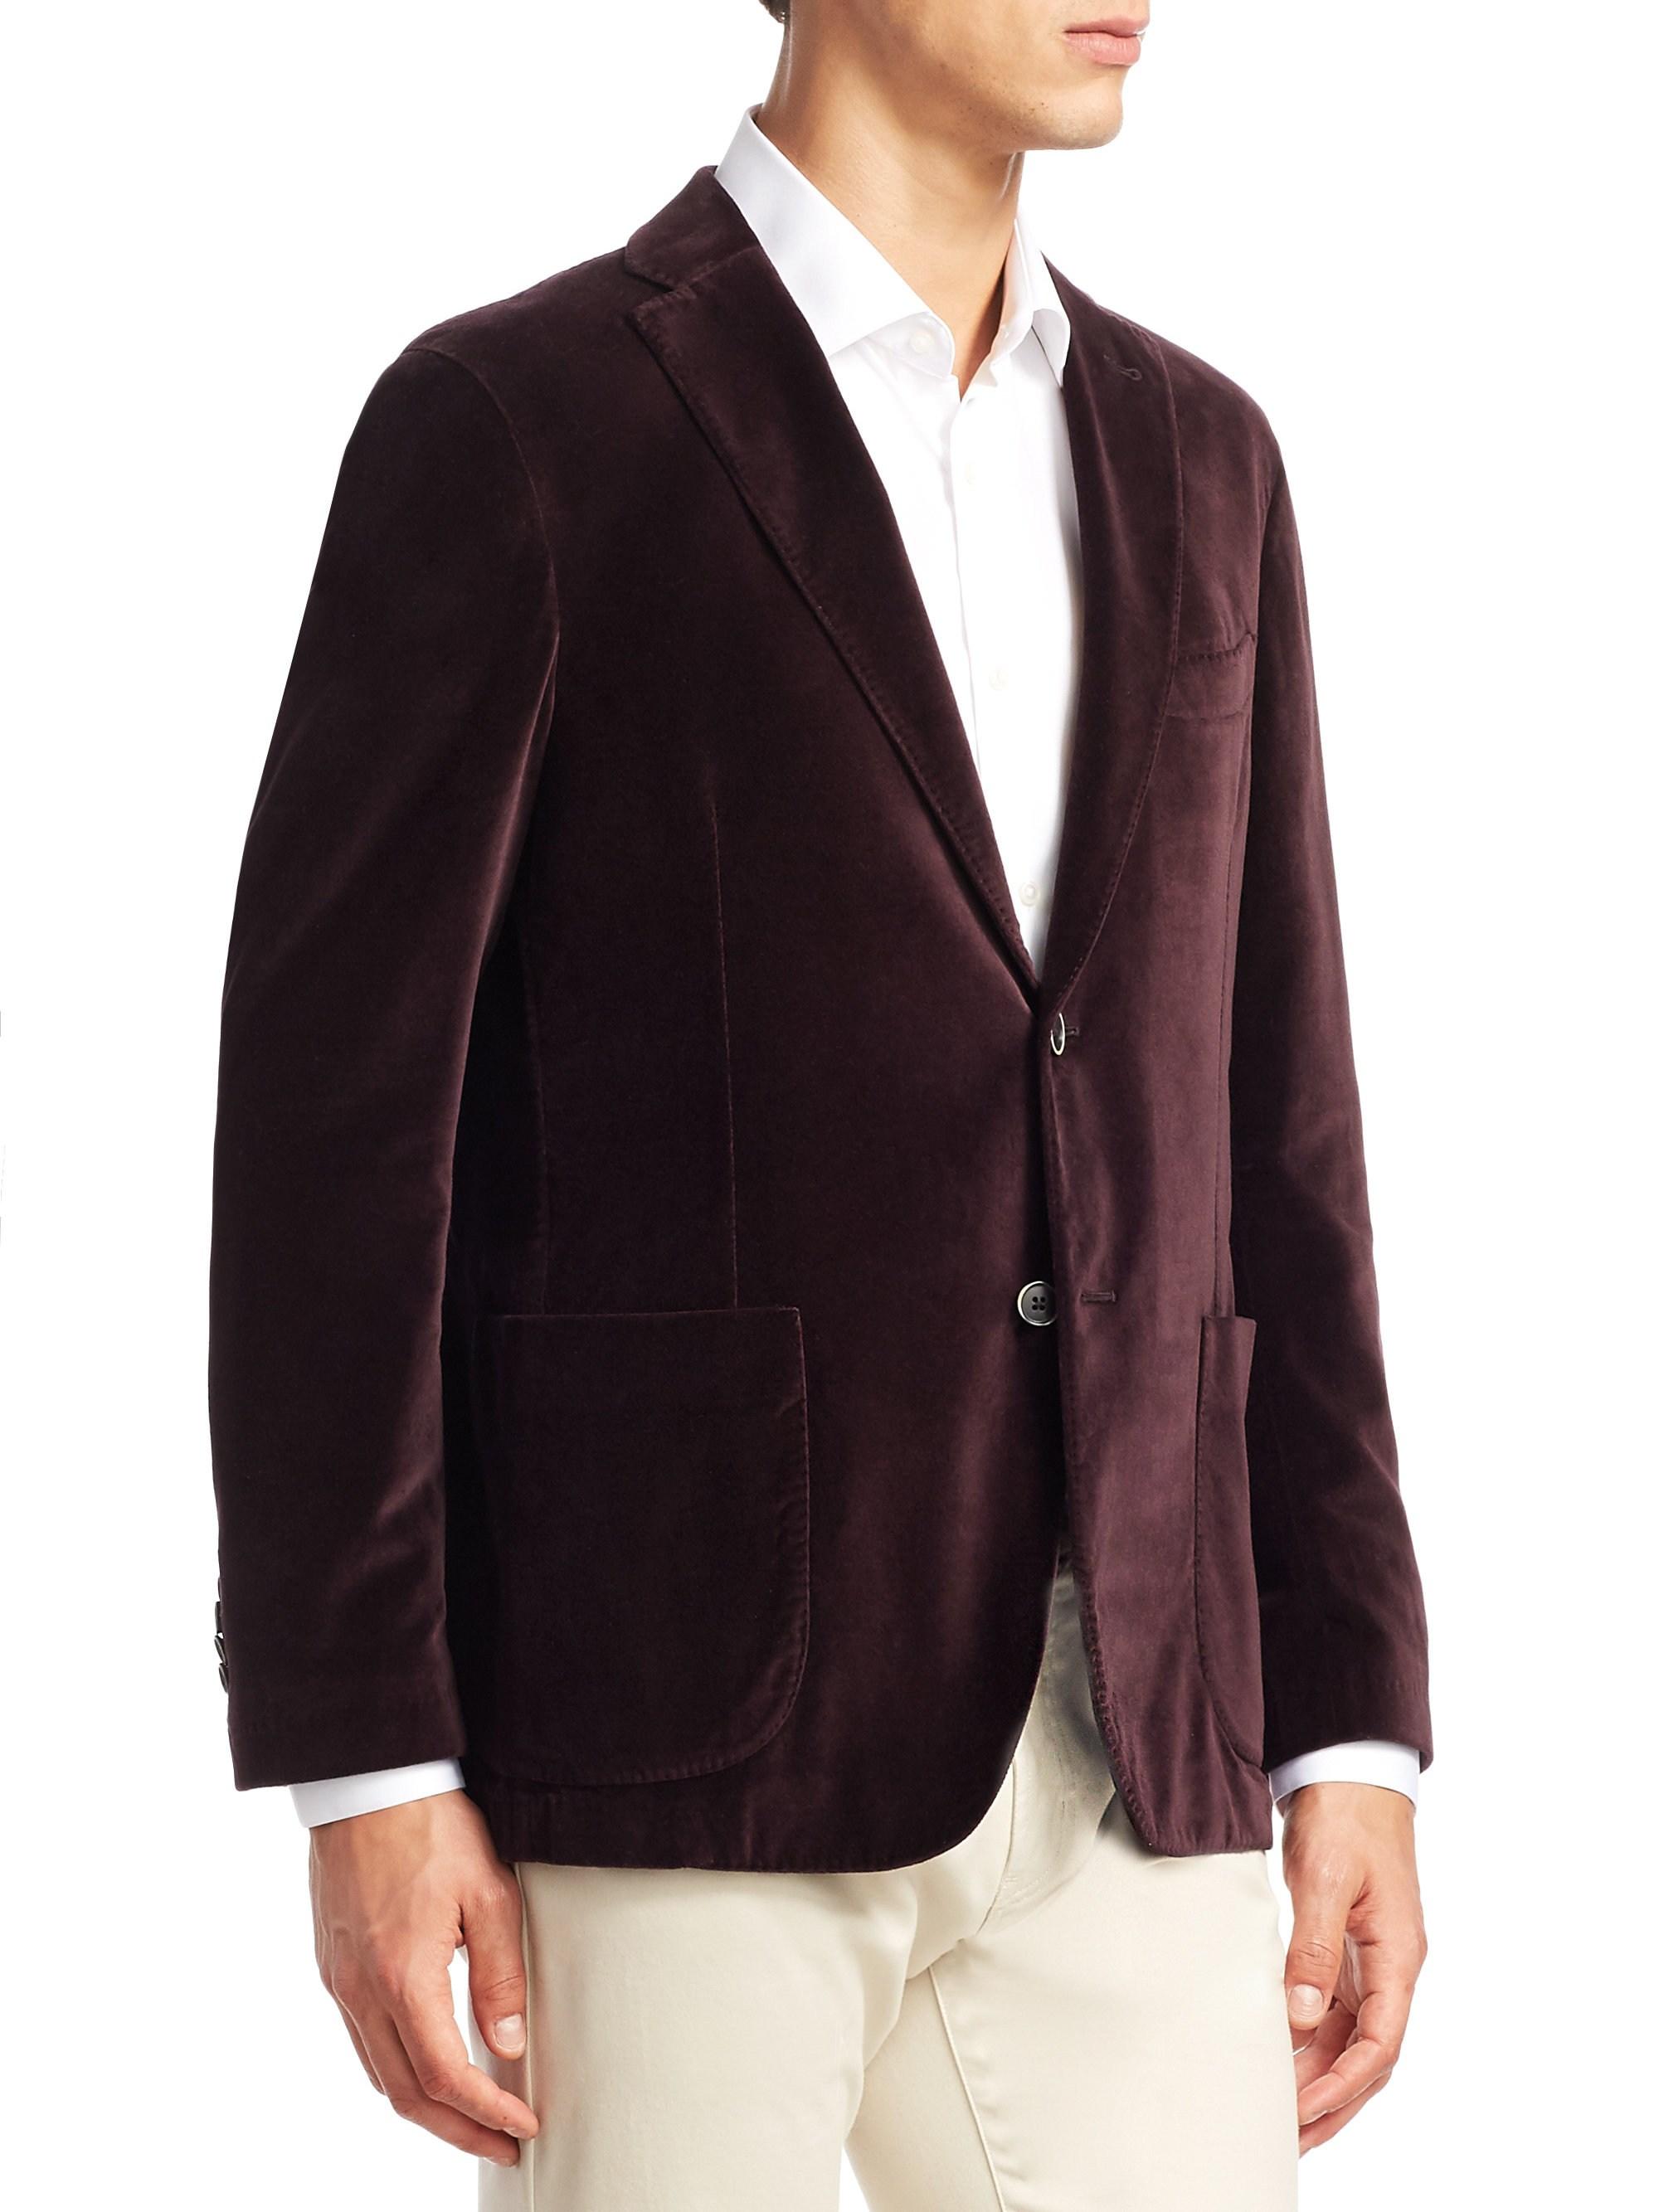 Saks Fifth Avenue Men's Collection Velvet Sportcoat - Burgundy for Men ...